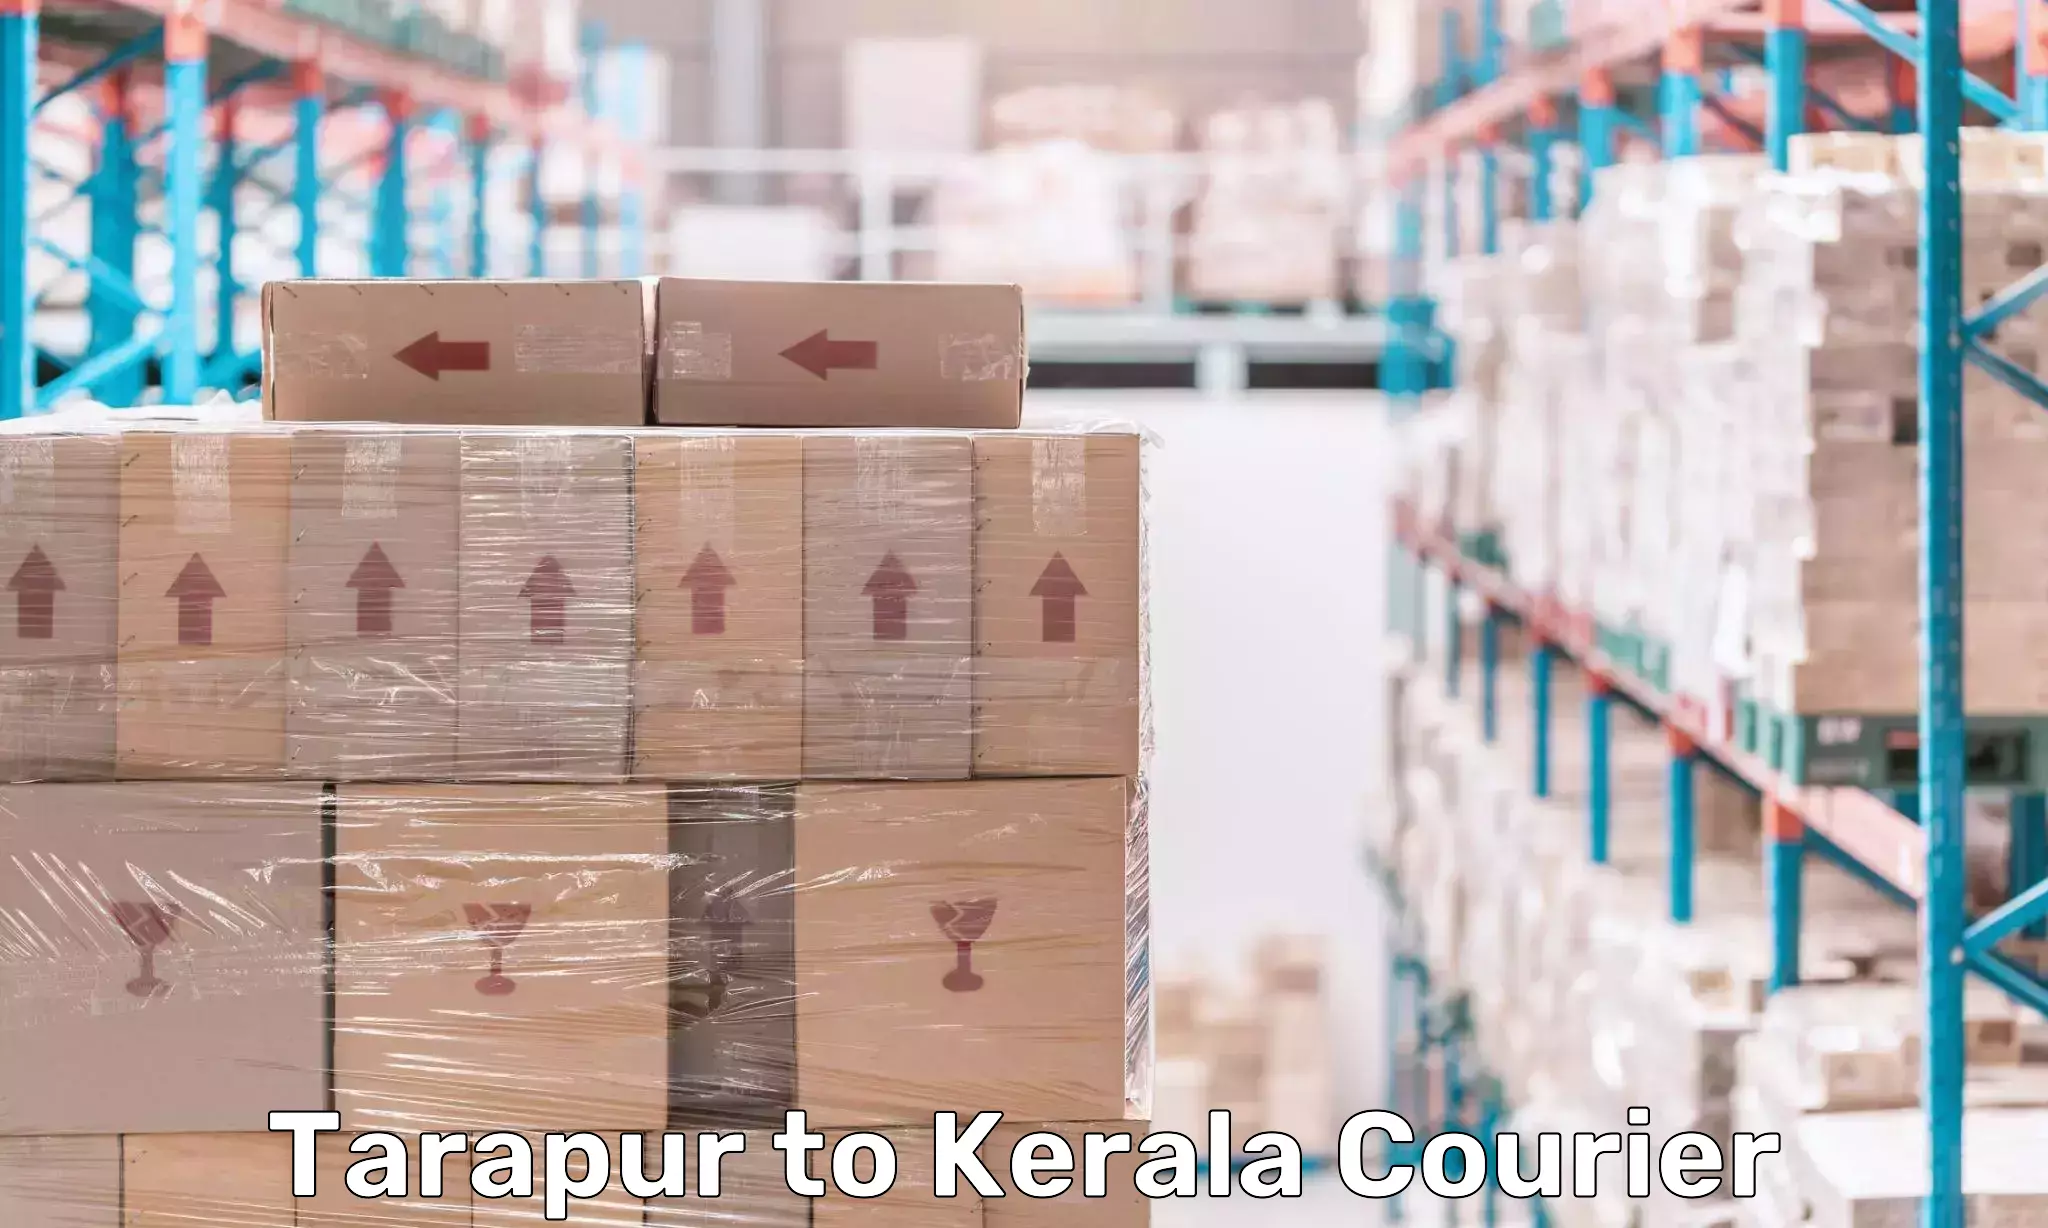 Pharmaceutical courier Tarapur to Kerala